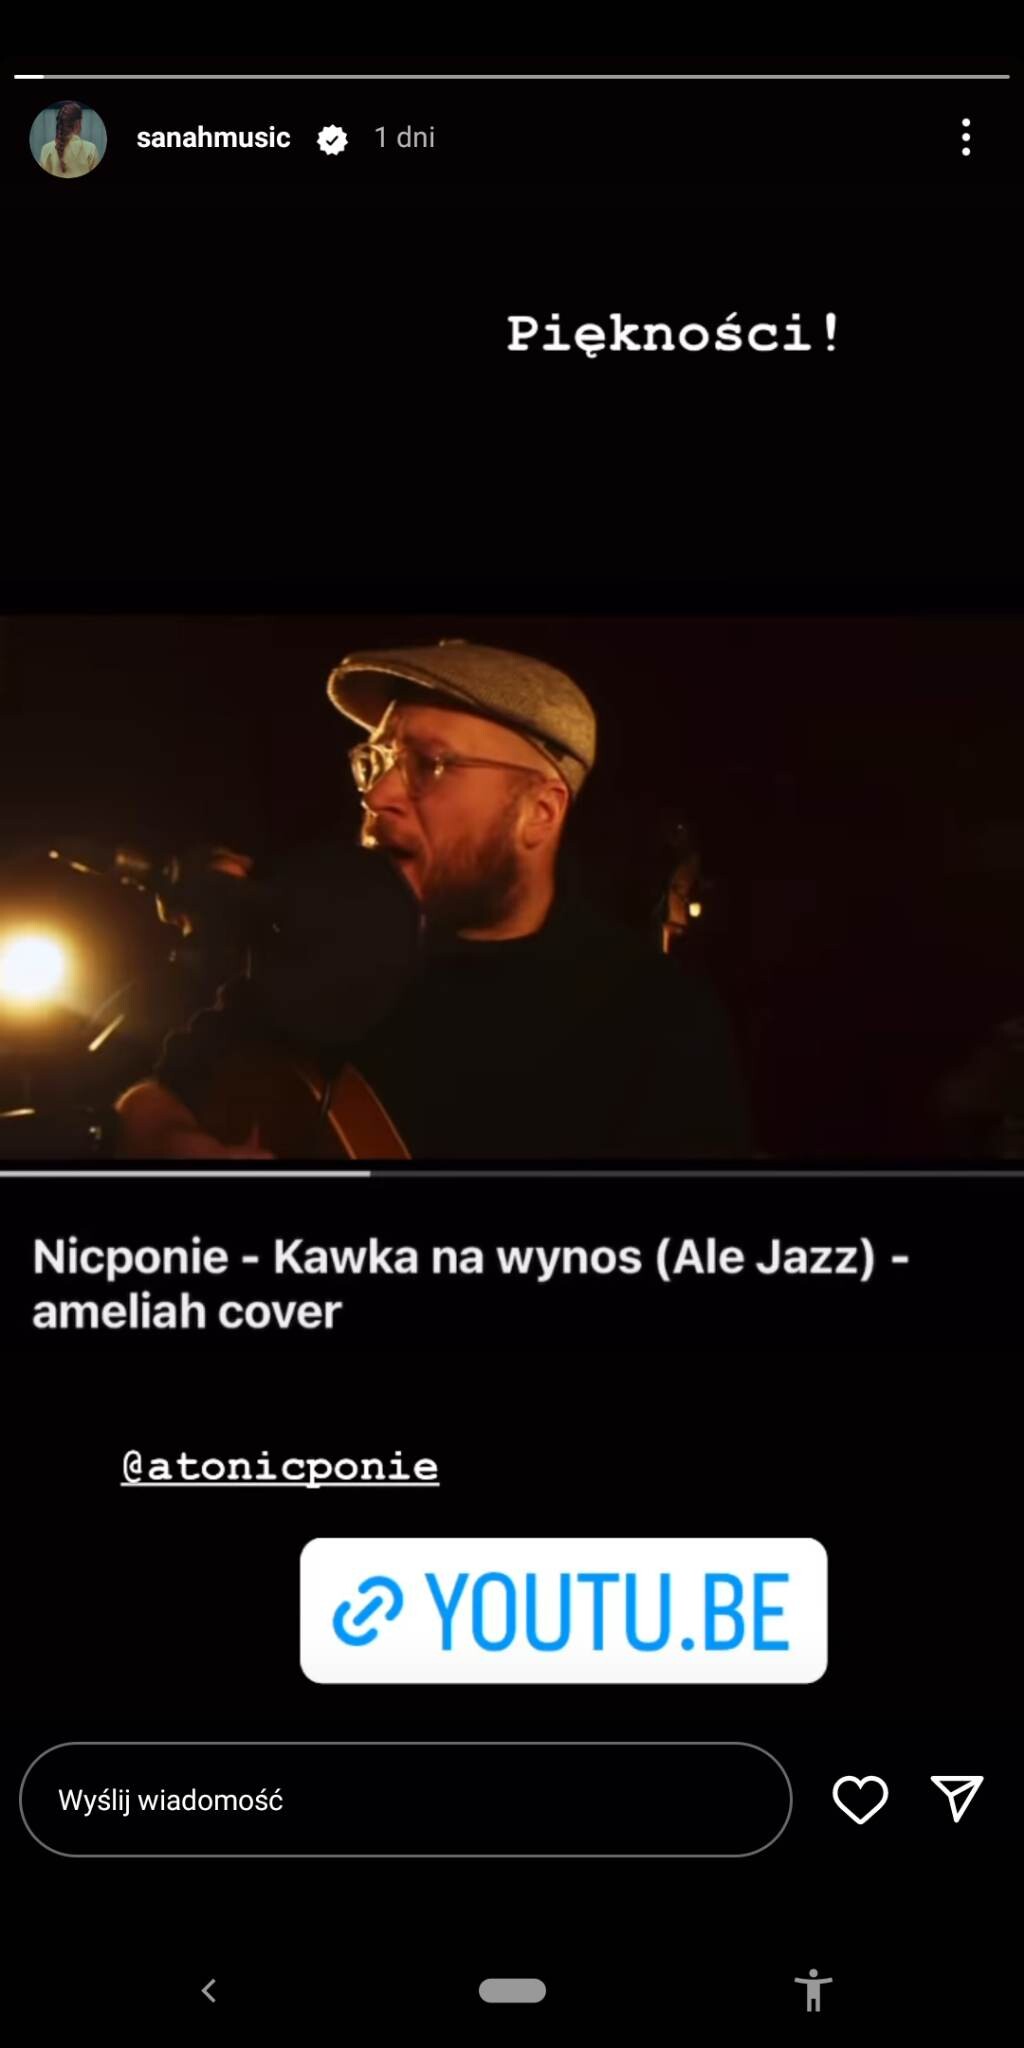 sanah o coverze "Ale jazz" zespołu Nicponie